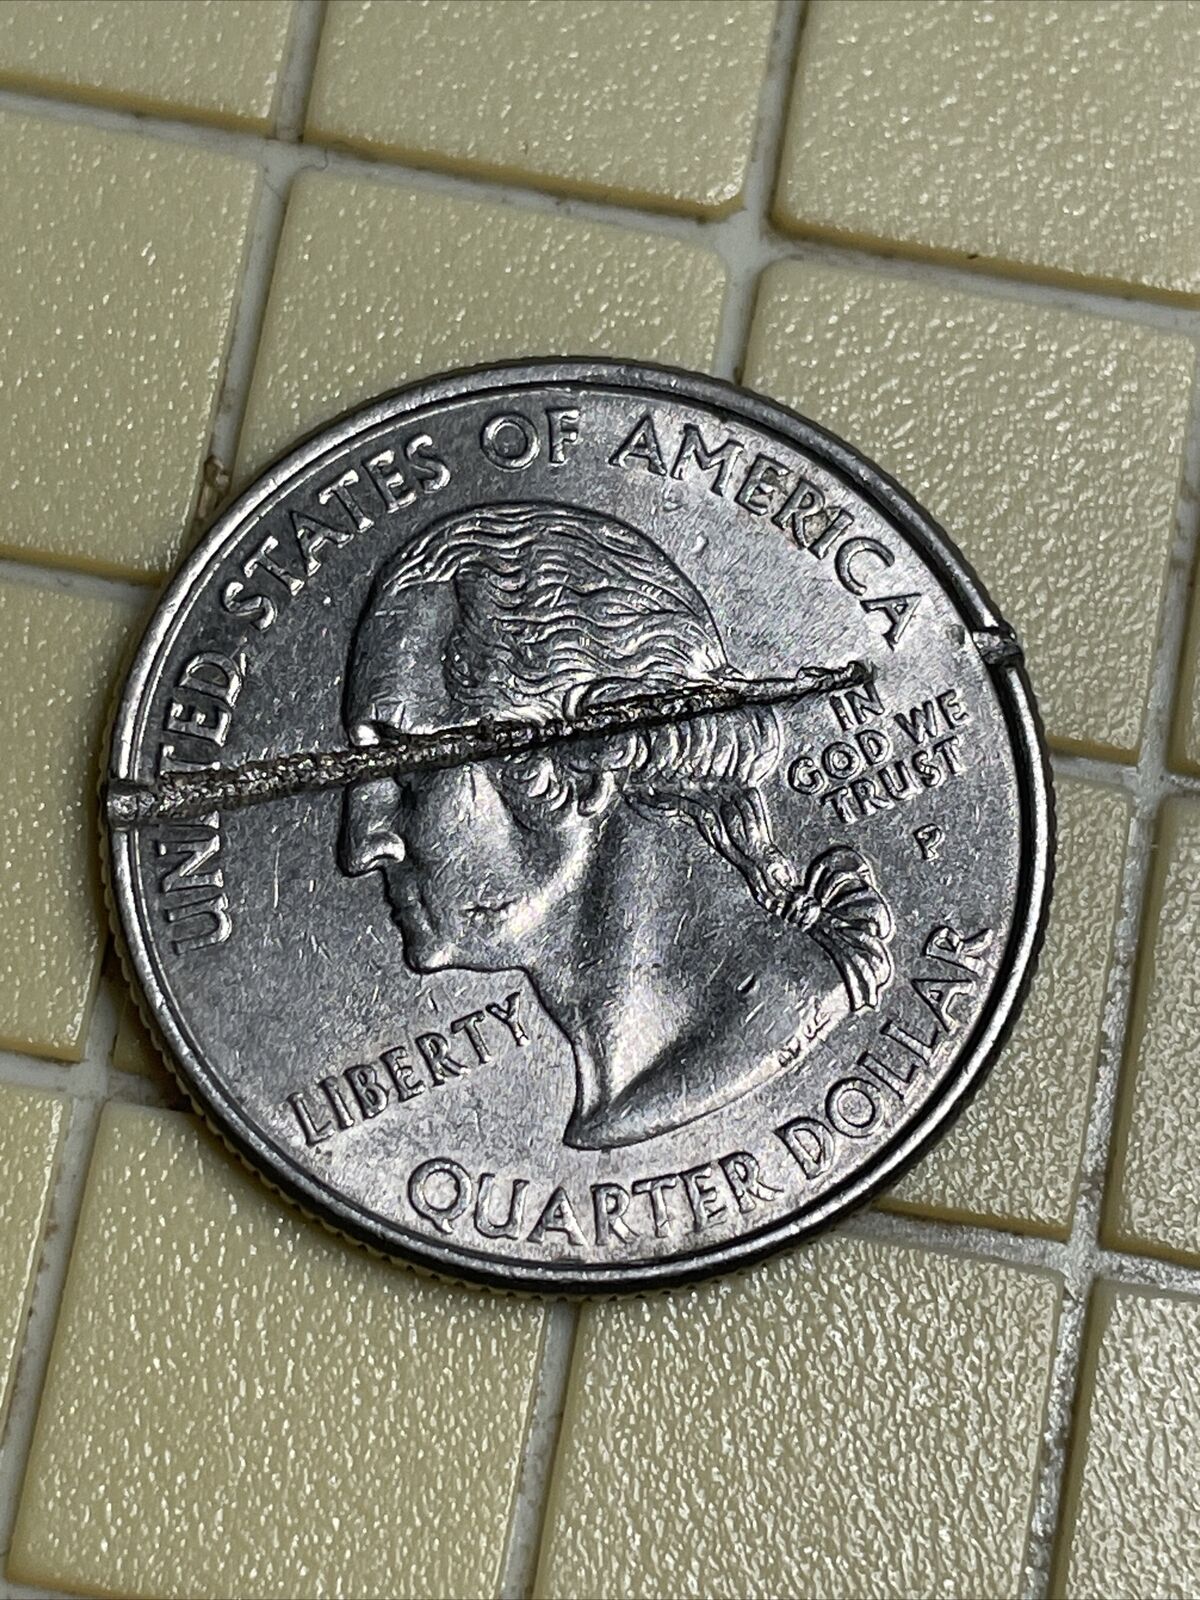 Massive Double Strike Through Error Quarter 2000 Rare Awesome Coin